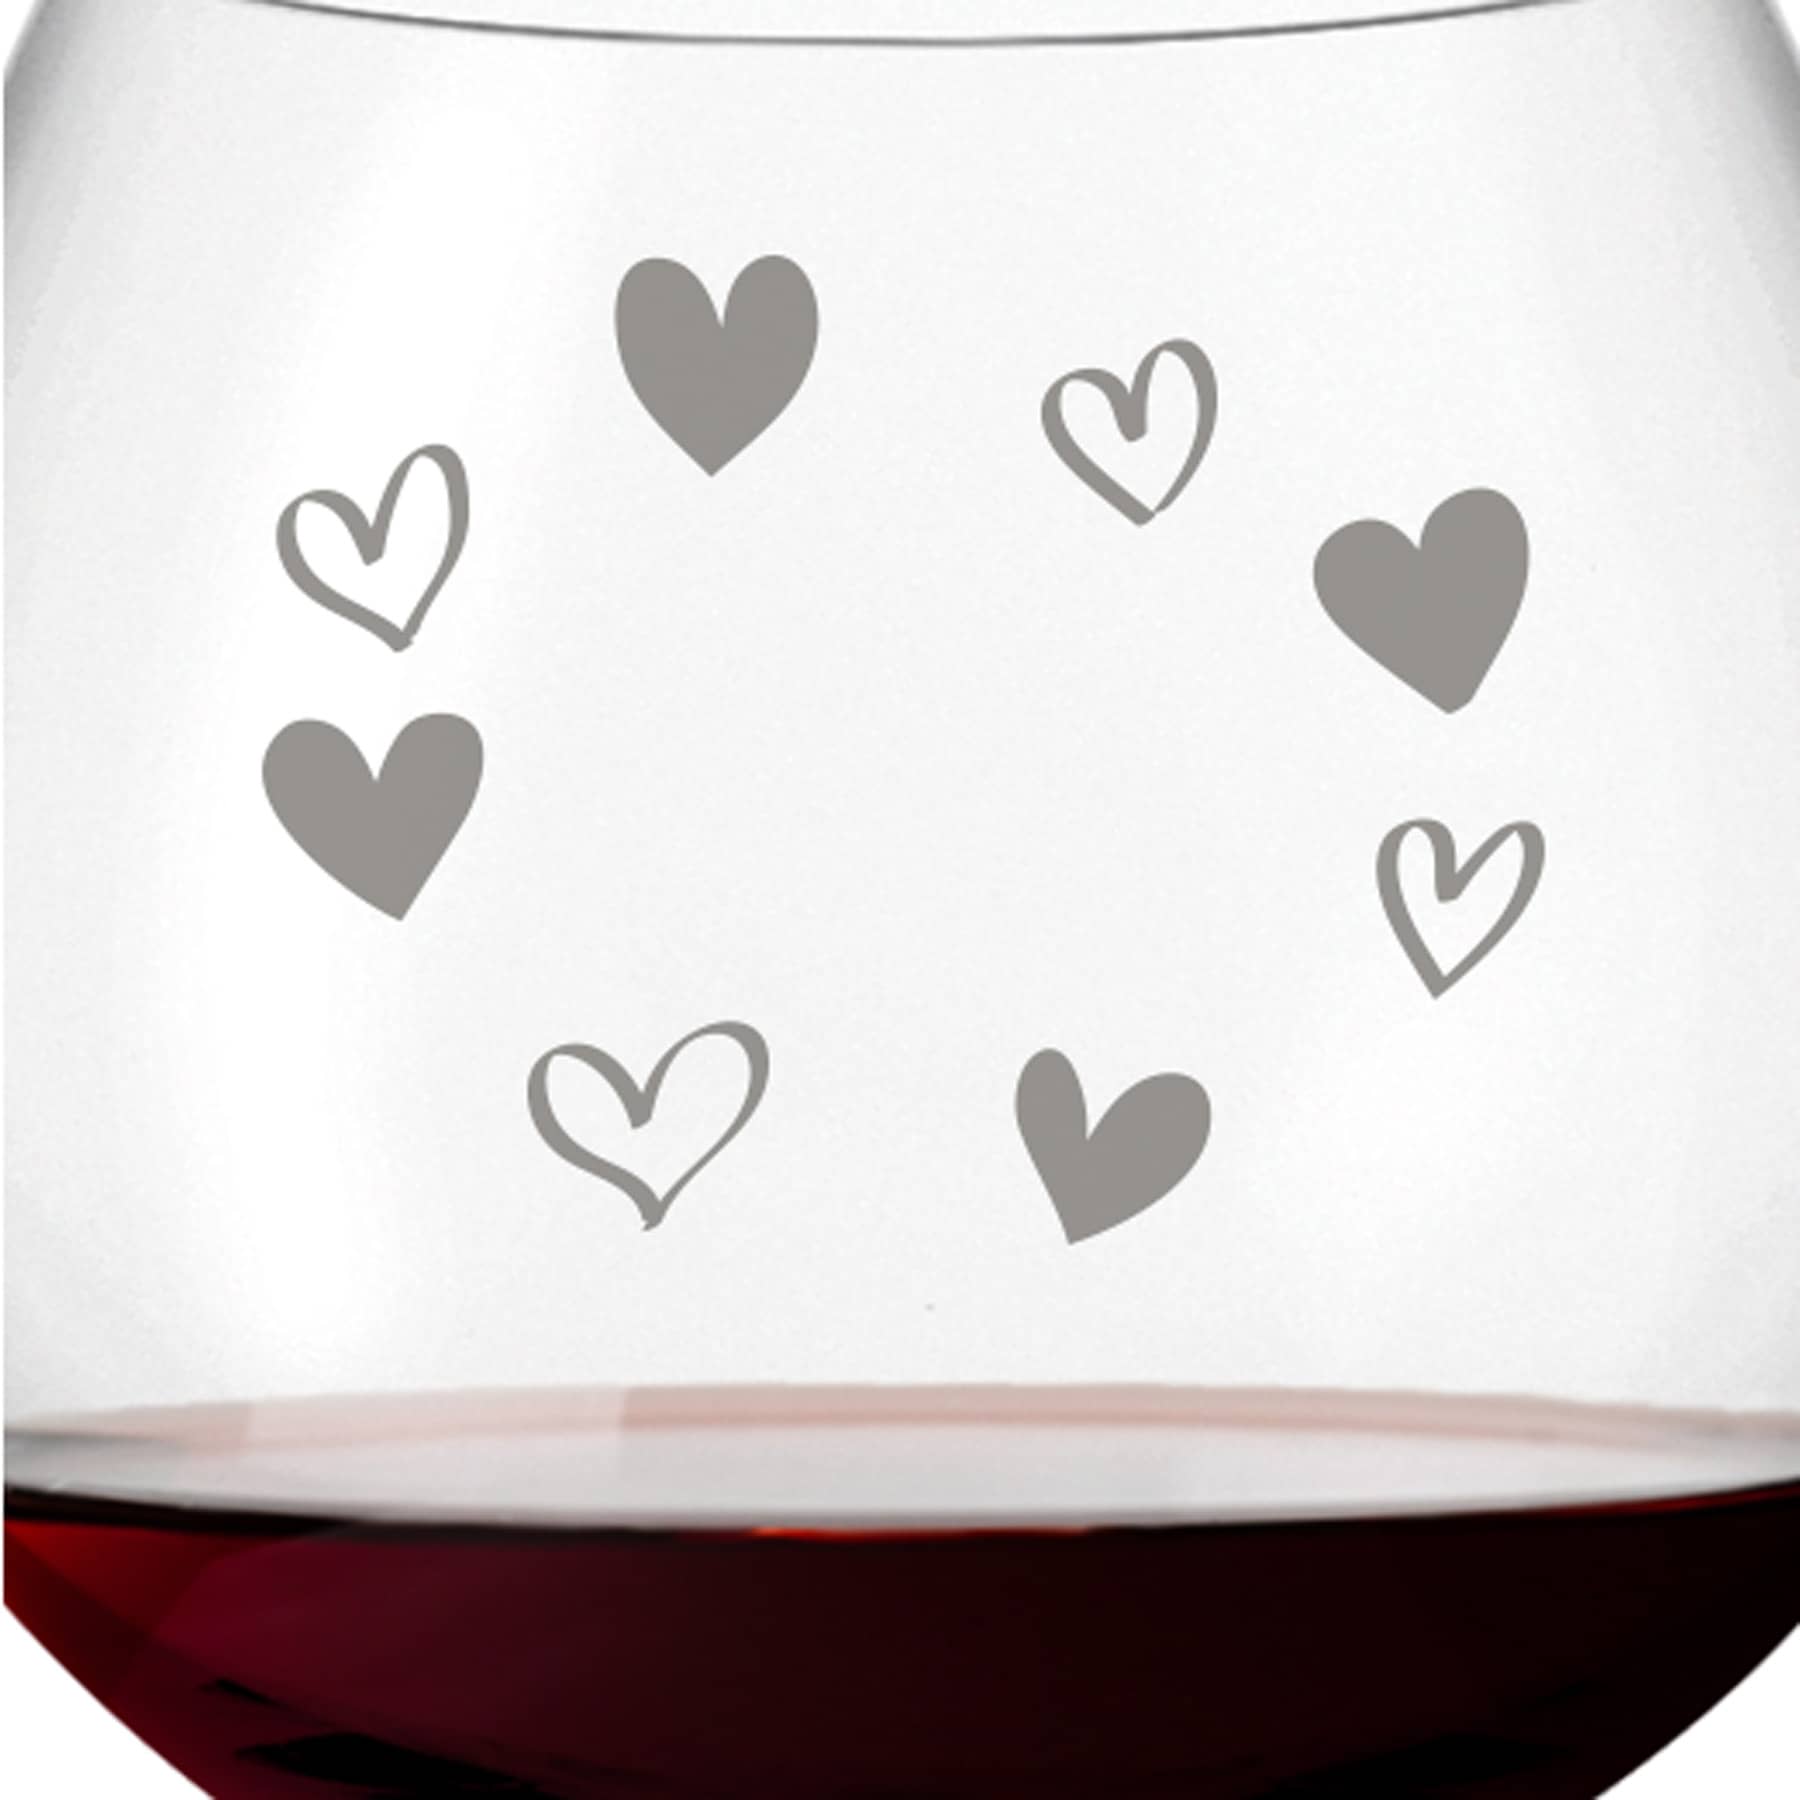 Leonardo Burgunderglas Rotweinglas CIAO+ 630ml mit Namen oder Wunschtext graviert (Herzkreis)